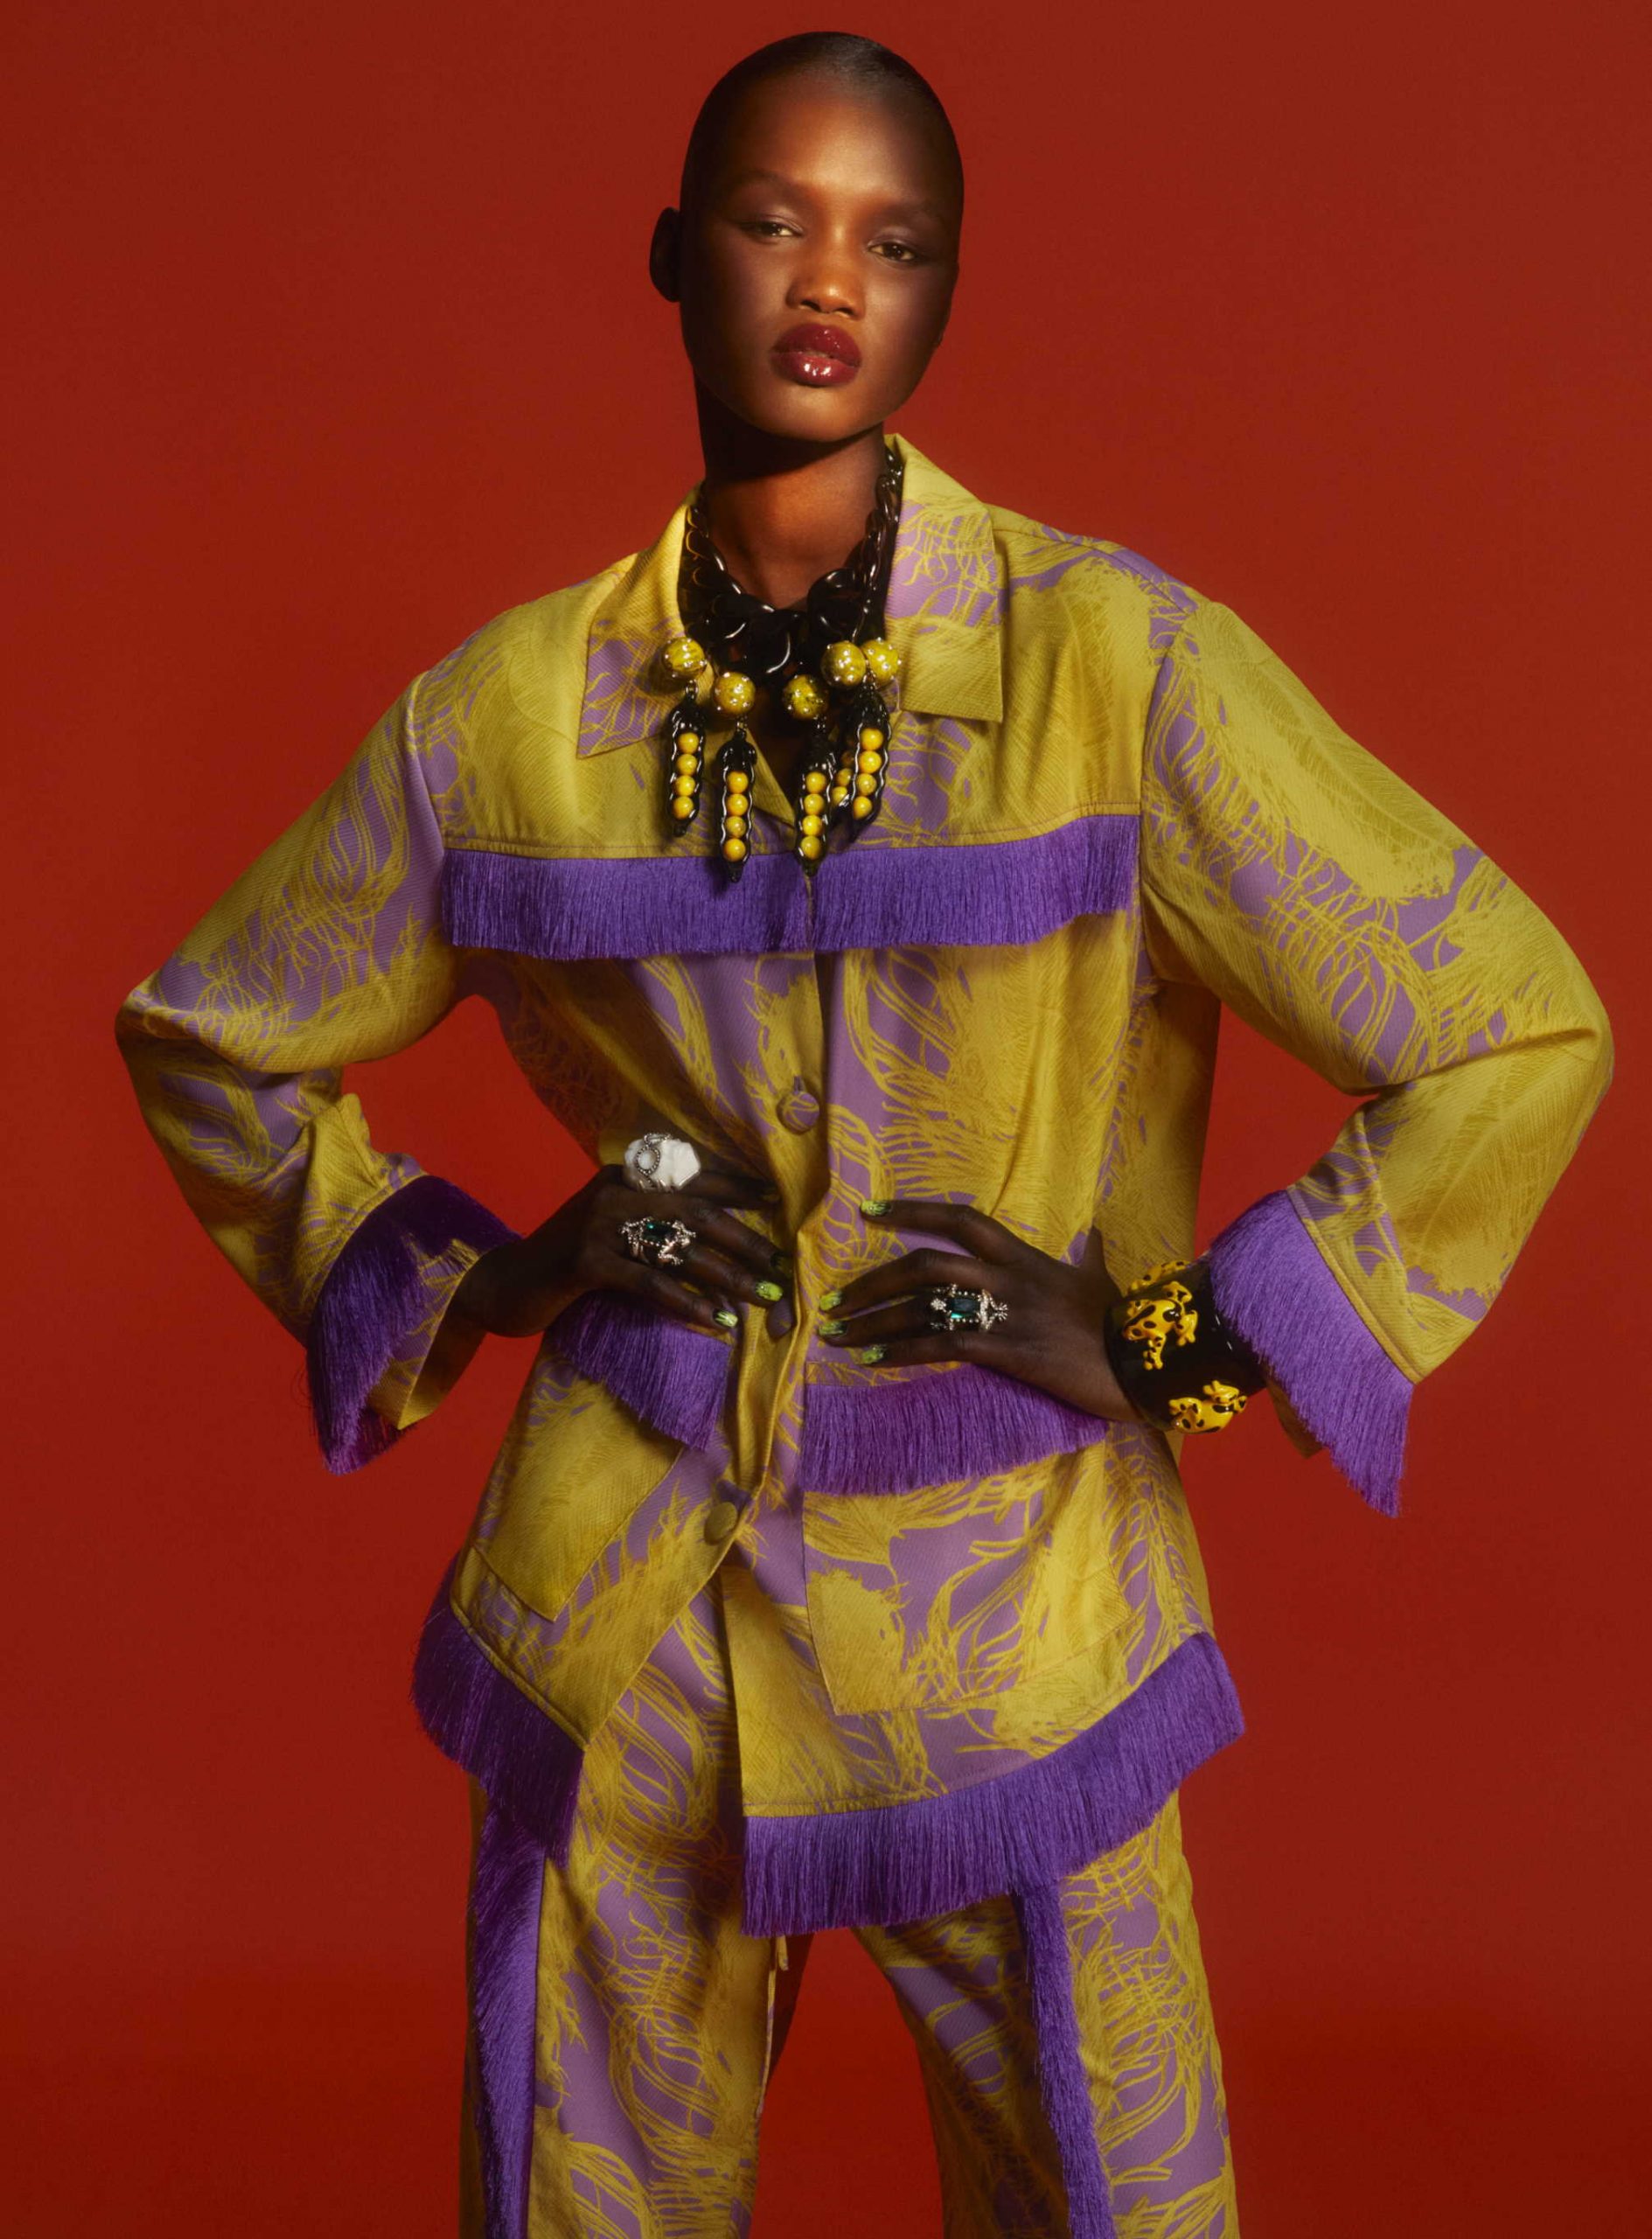 H&M s ponosom predstavlja prekrasnu i zaigranu kolekciju u suradnji s modnom ikonom Iris Apfel slaveći stoljeće stila